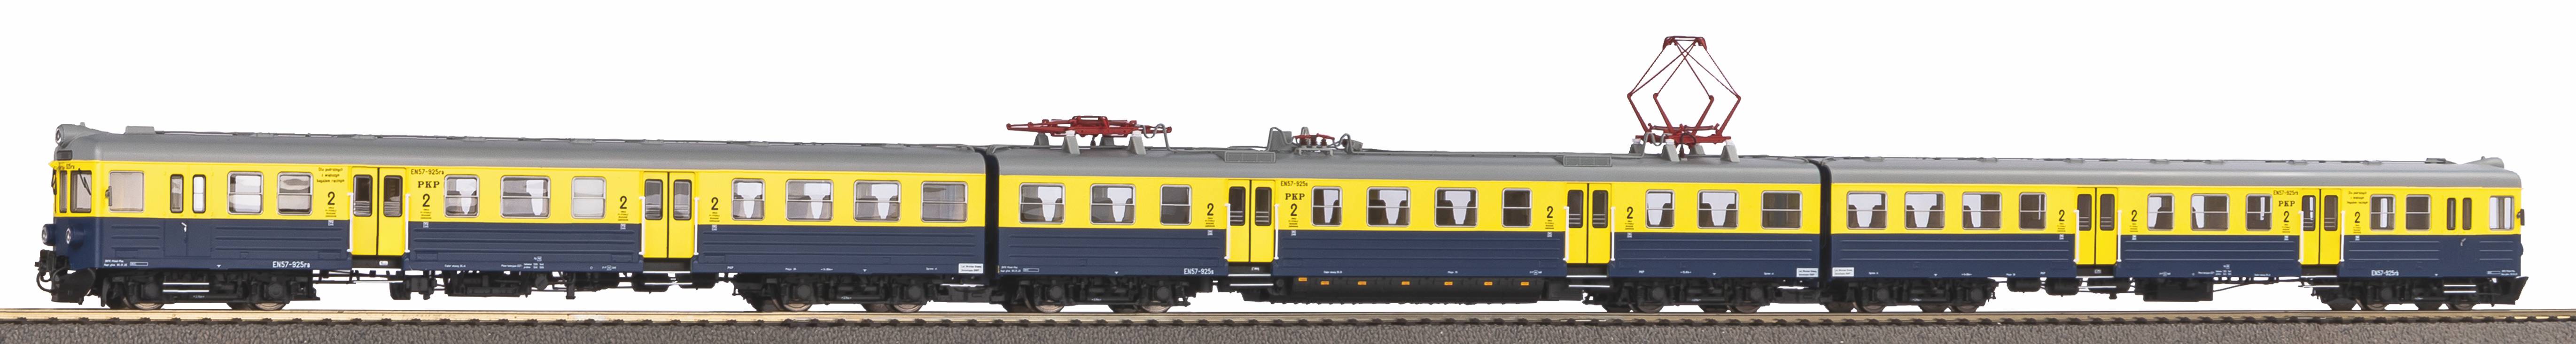 piko-51450-1-Elektrotriebzug-EN57-PKP-Polskie-Koleje-Panstwowe-Zespol-trakcyjny-Polnische-Staatsbahn